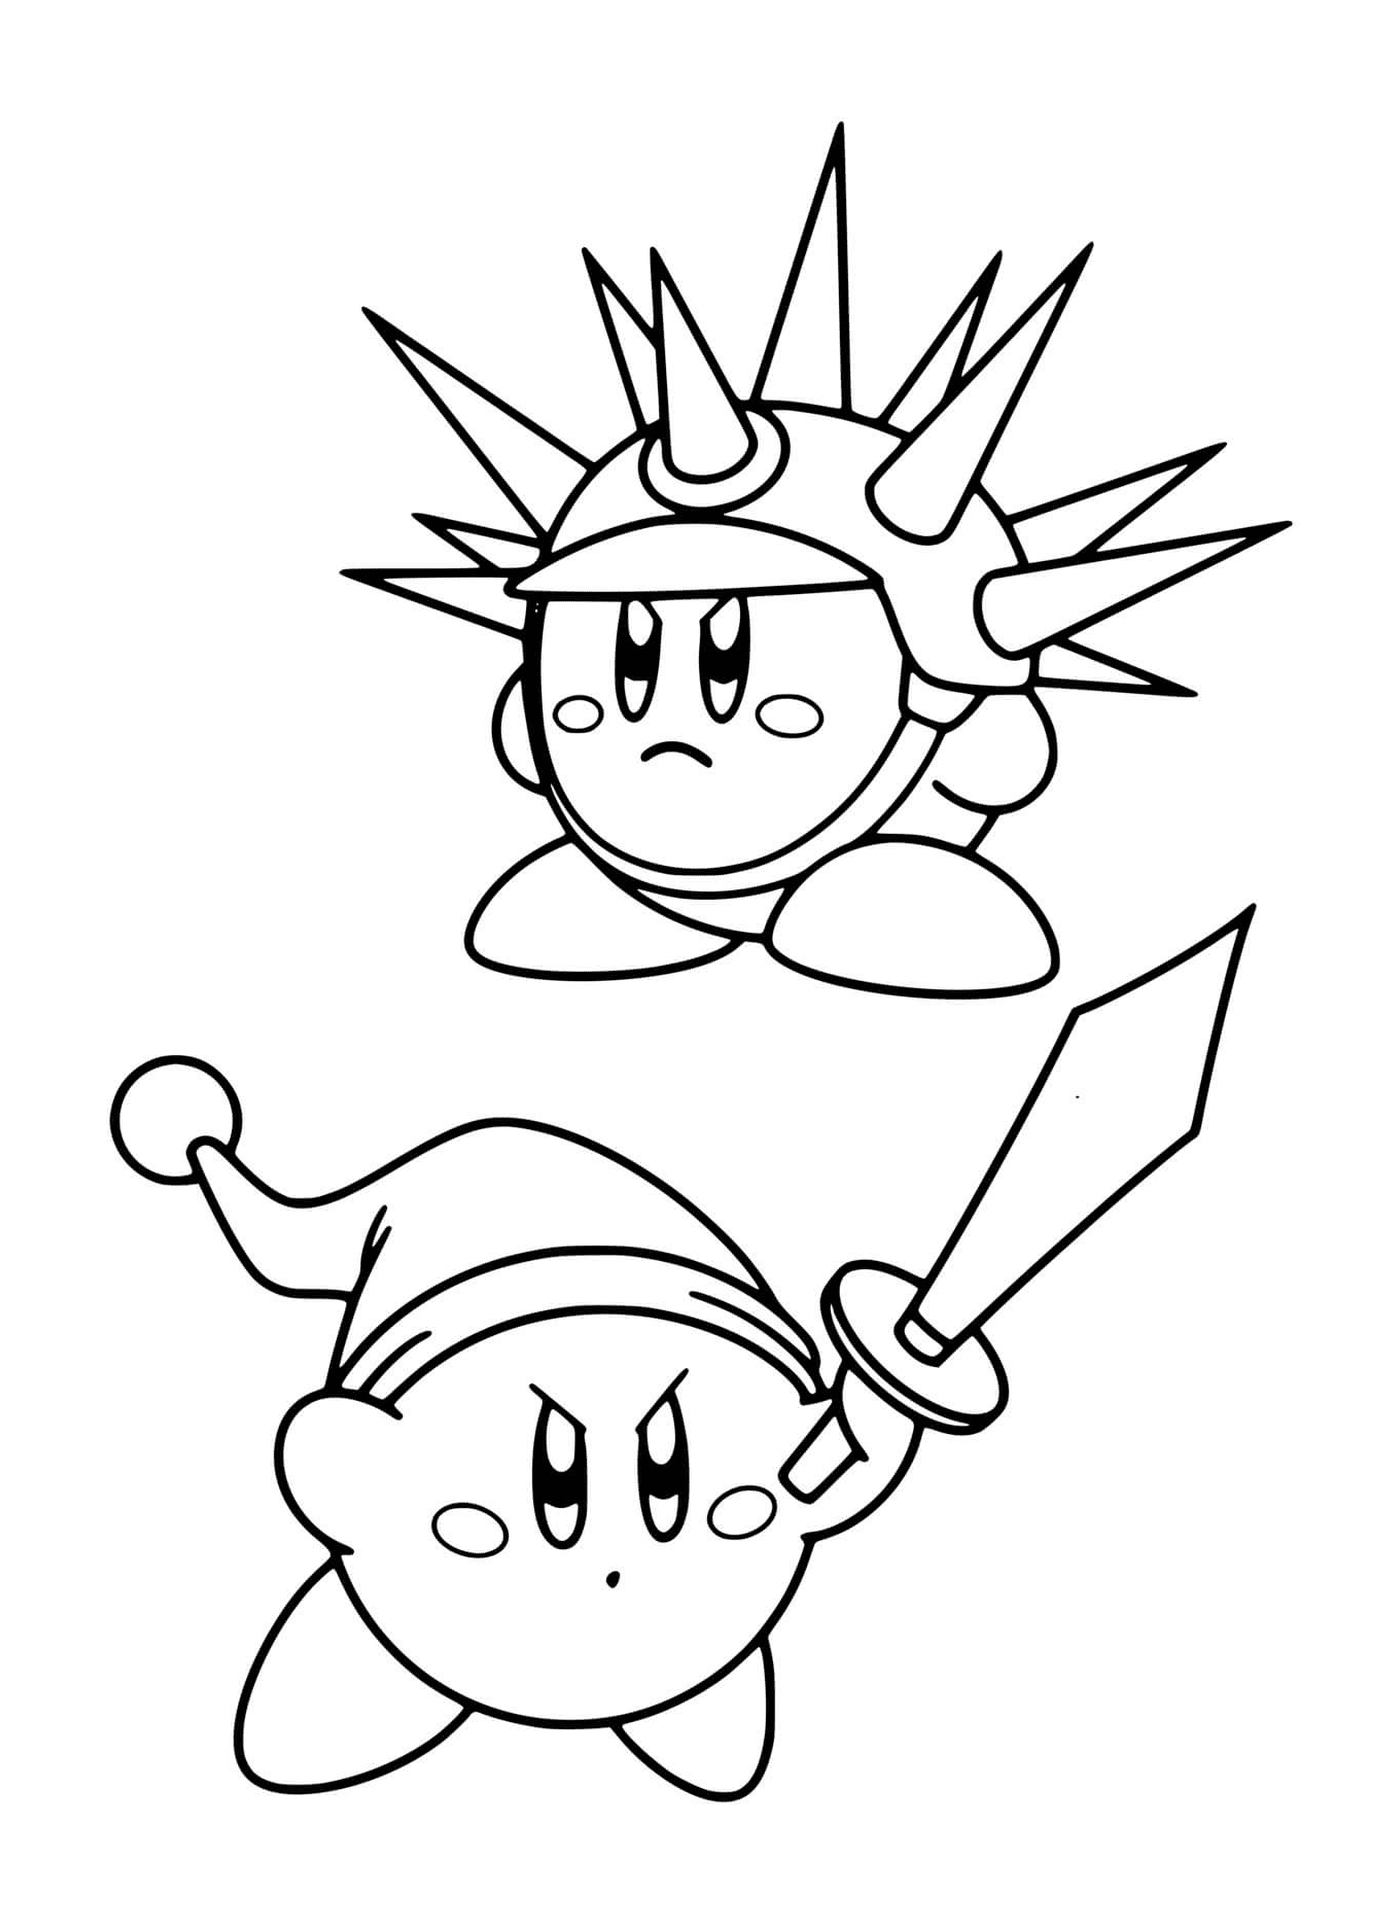  Zwei Charaktere von Kirby Fighters 2 